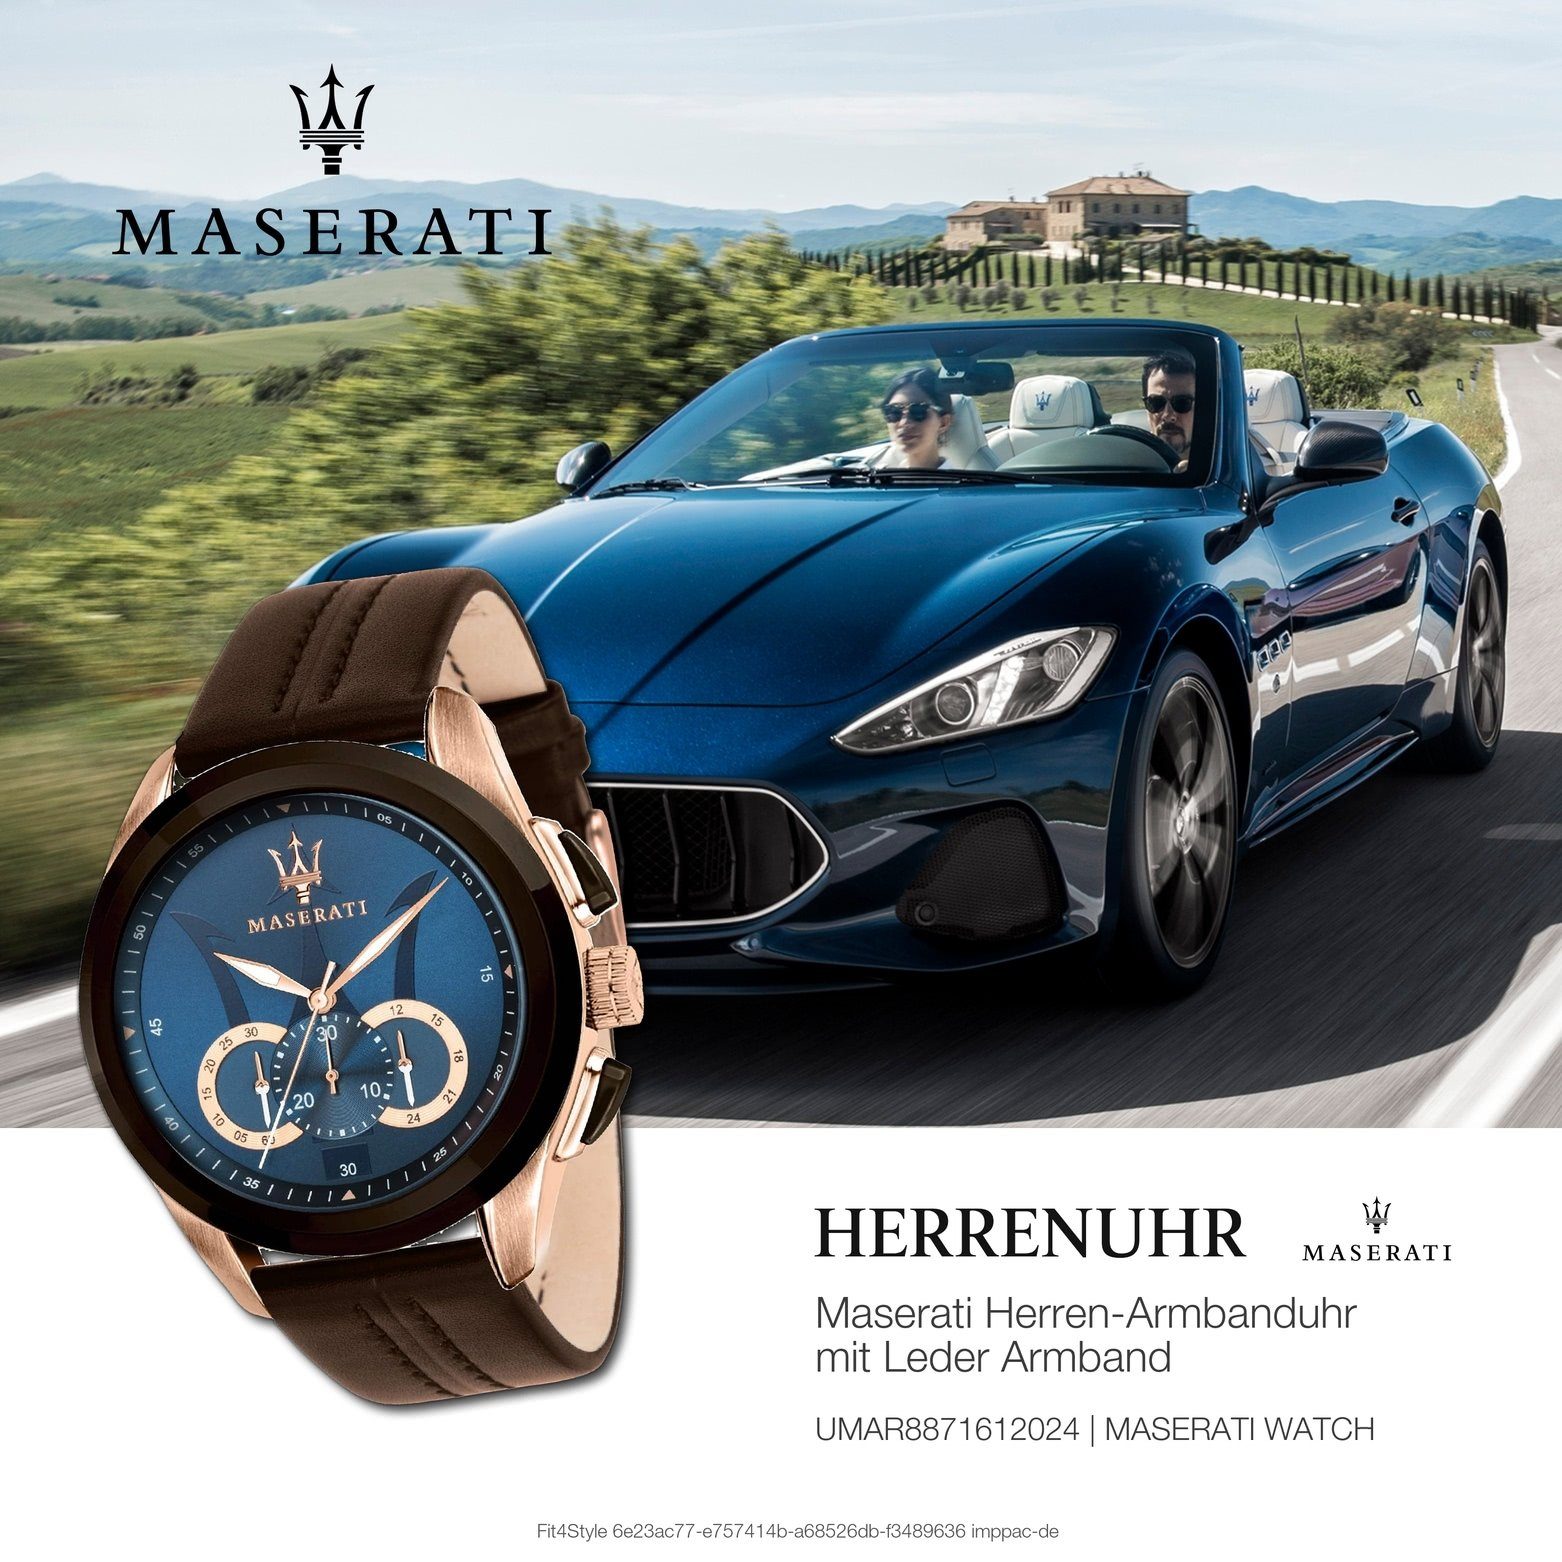 Made-In groß braun Herrenuhr 55x45mm) Chronograph Maserati Lederarmband, Chronograph, rund, Herren (ca. Uhr Italy MASERATI